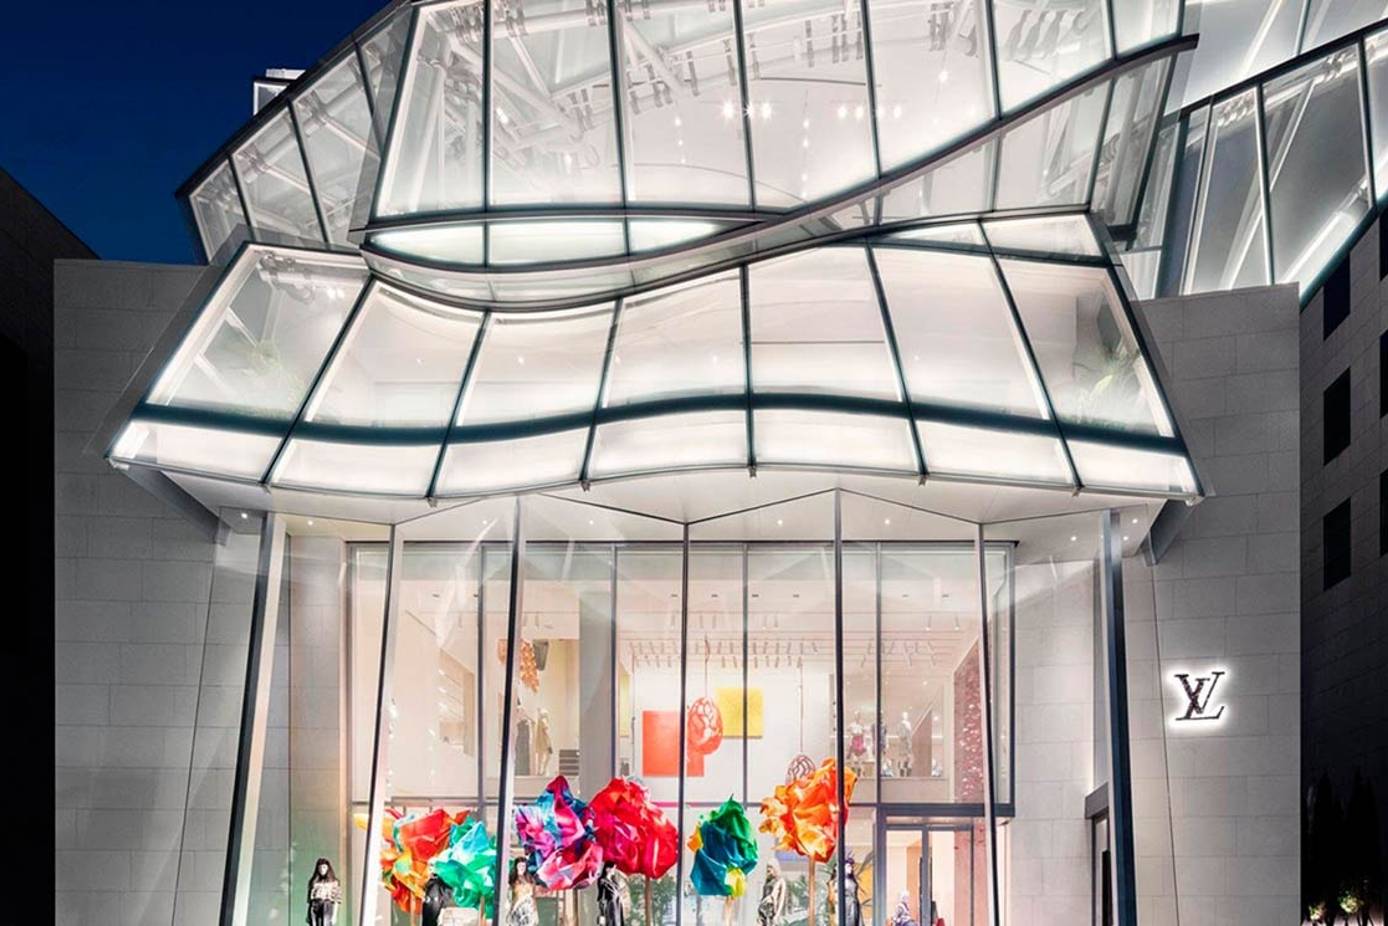 La mayor tienda de Louis Vuitton para hombre en Estados Unidos abre sus  puertas